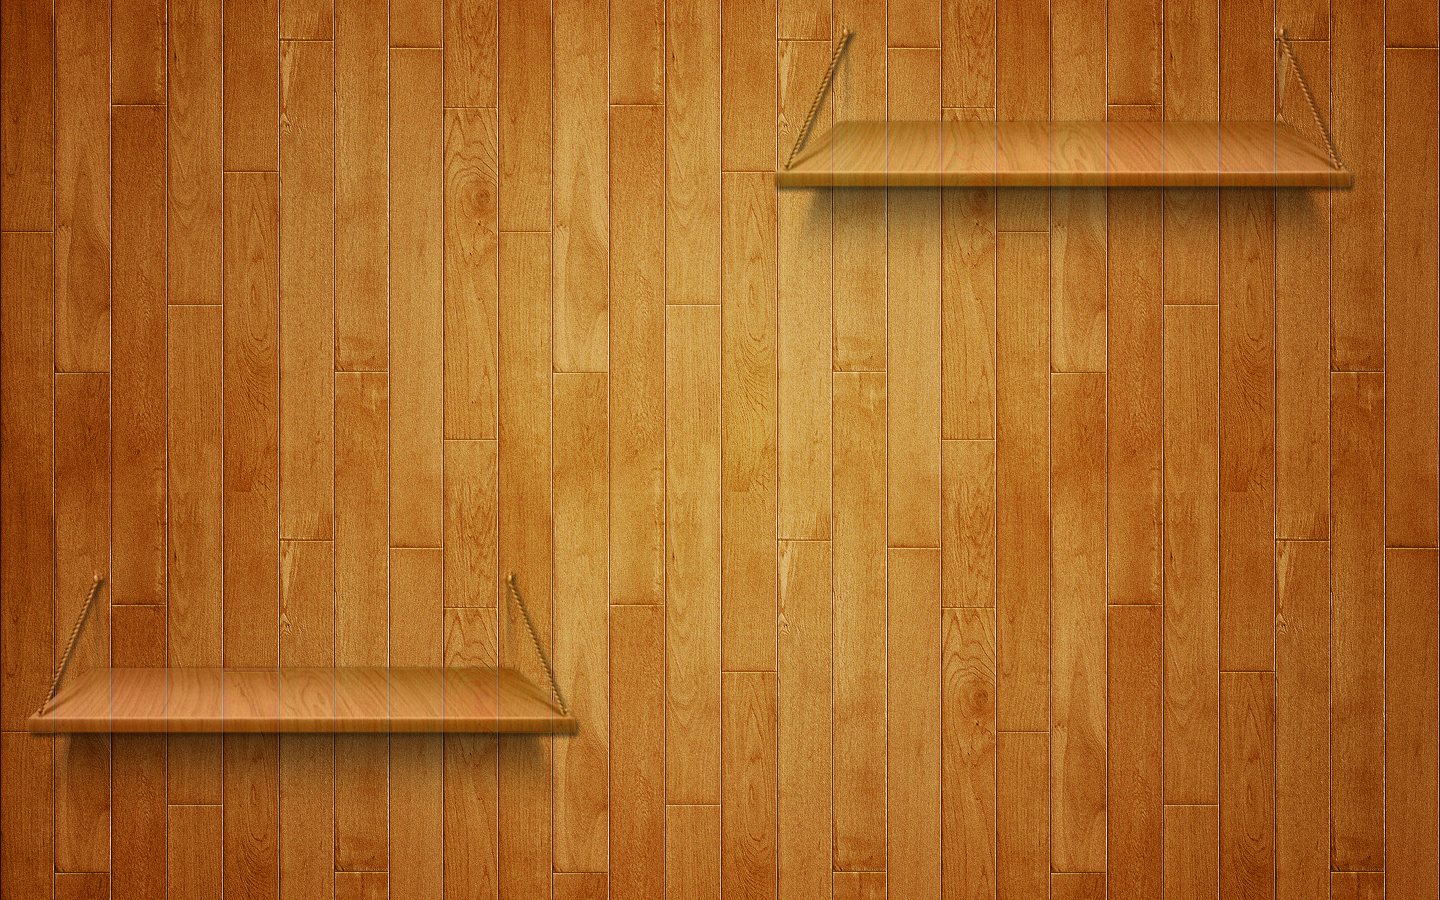 Woodworking Desktop Wallpaper - WallpaperSafari